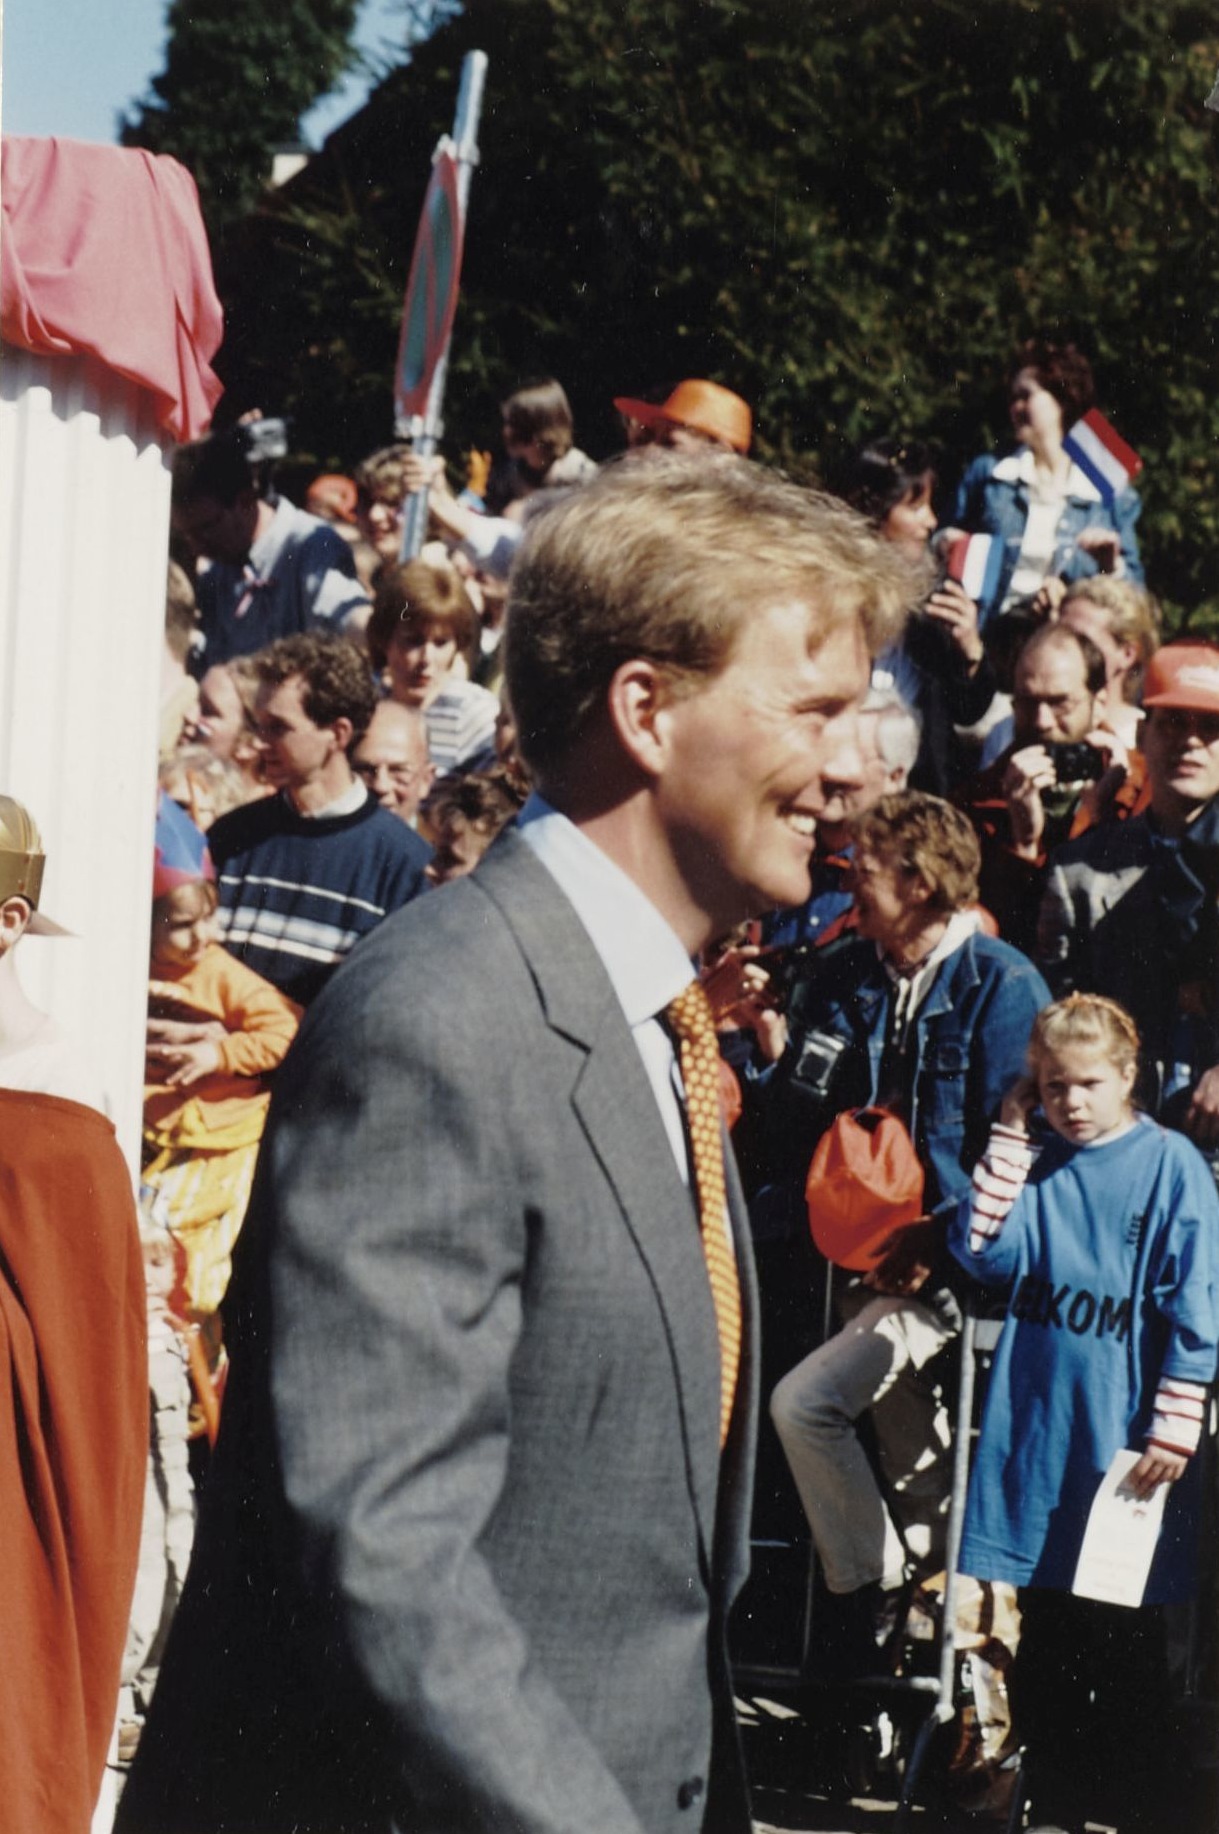 Toenmalig Kroonprins Willem-Alexander tijdens Koninginnedag 1999 te Houten